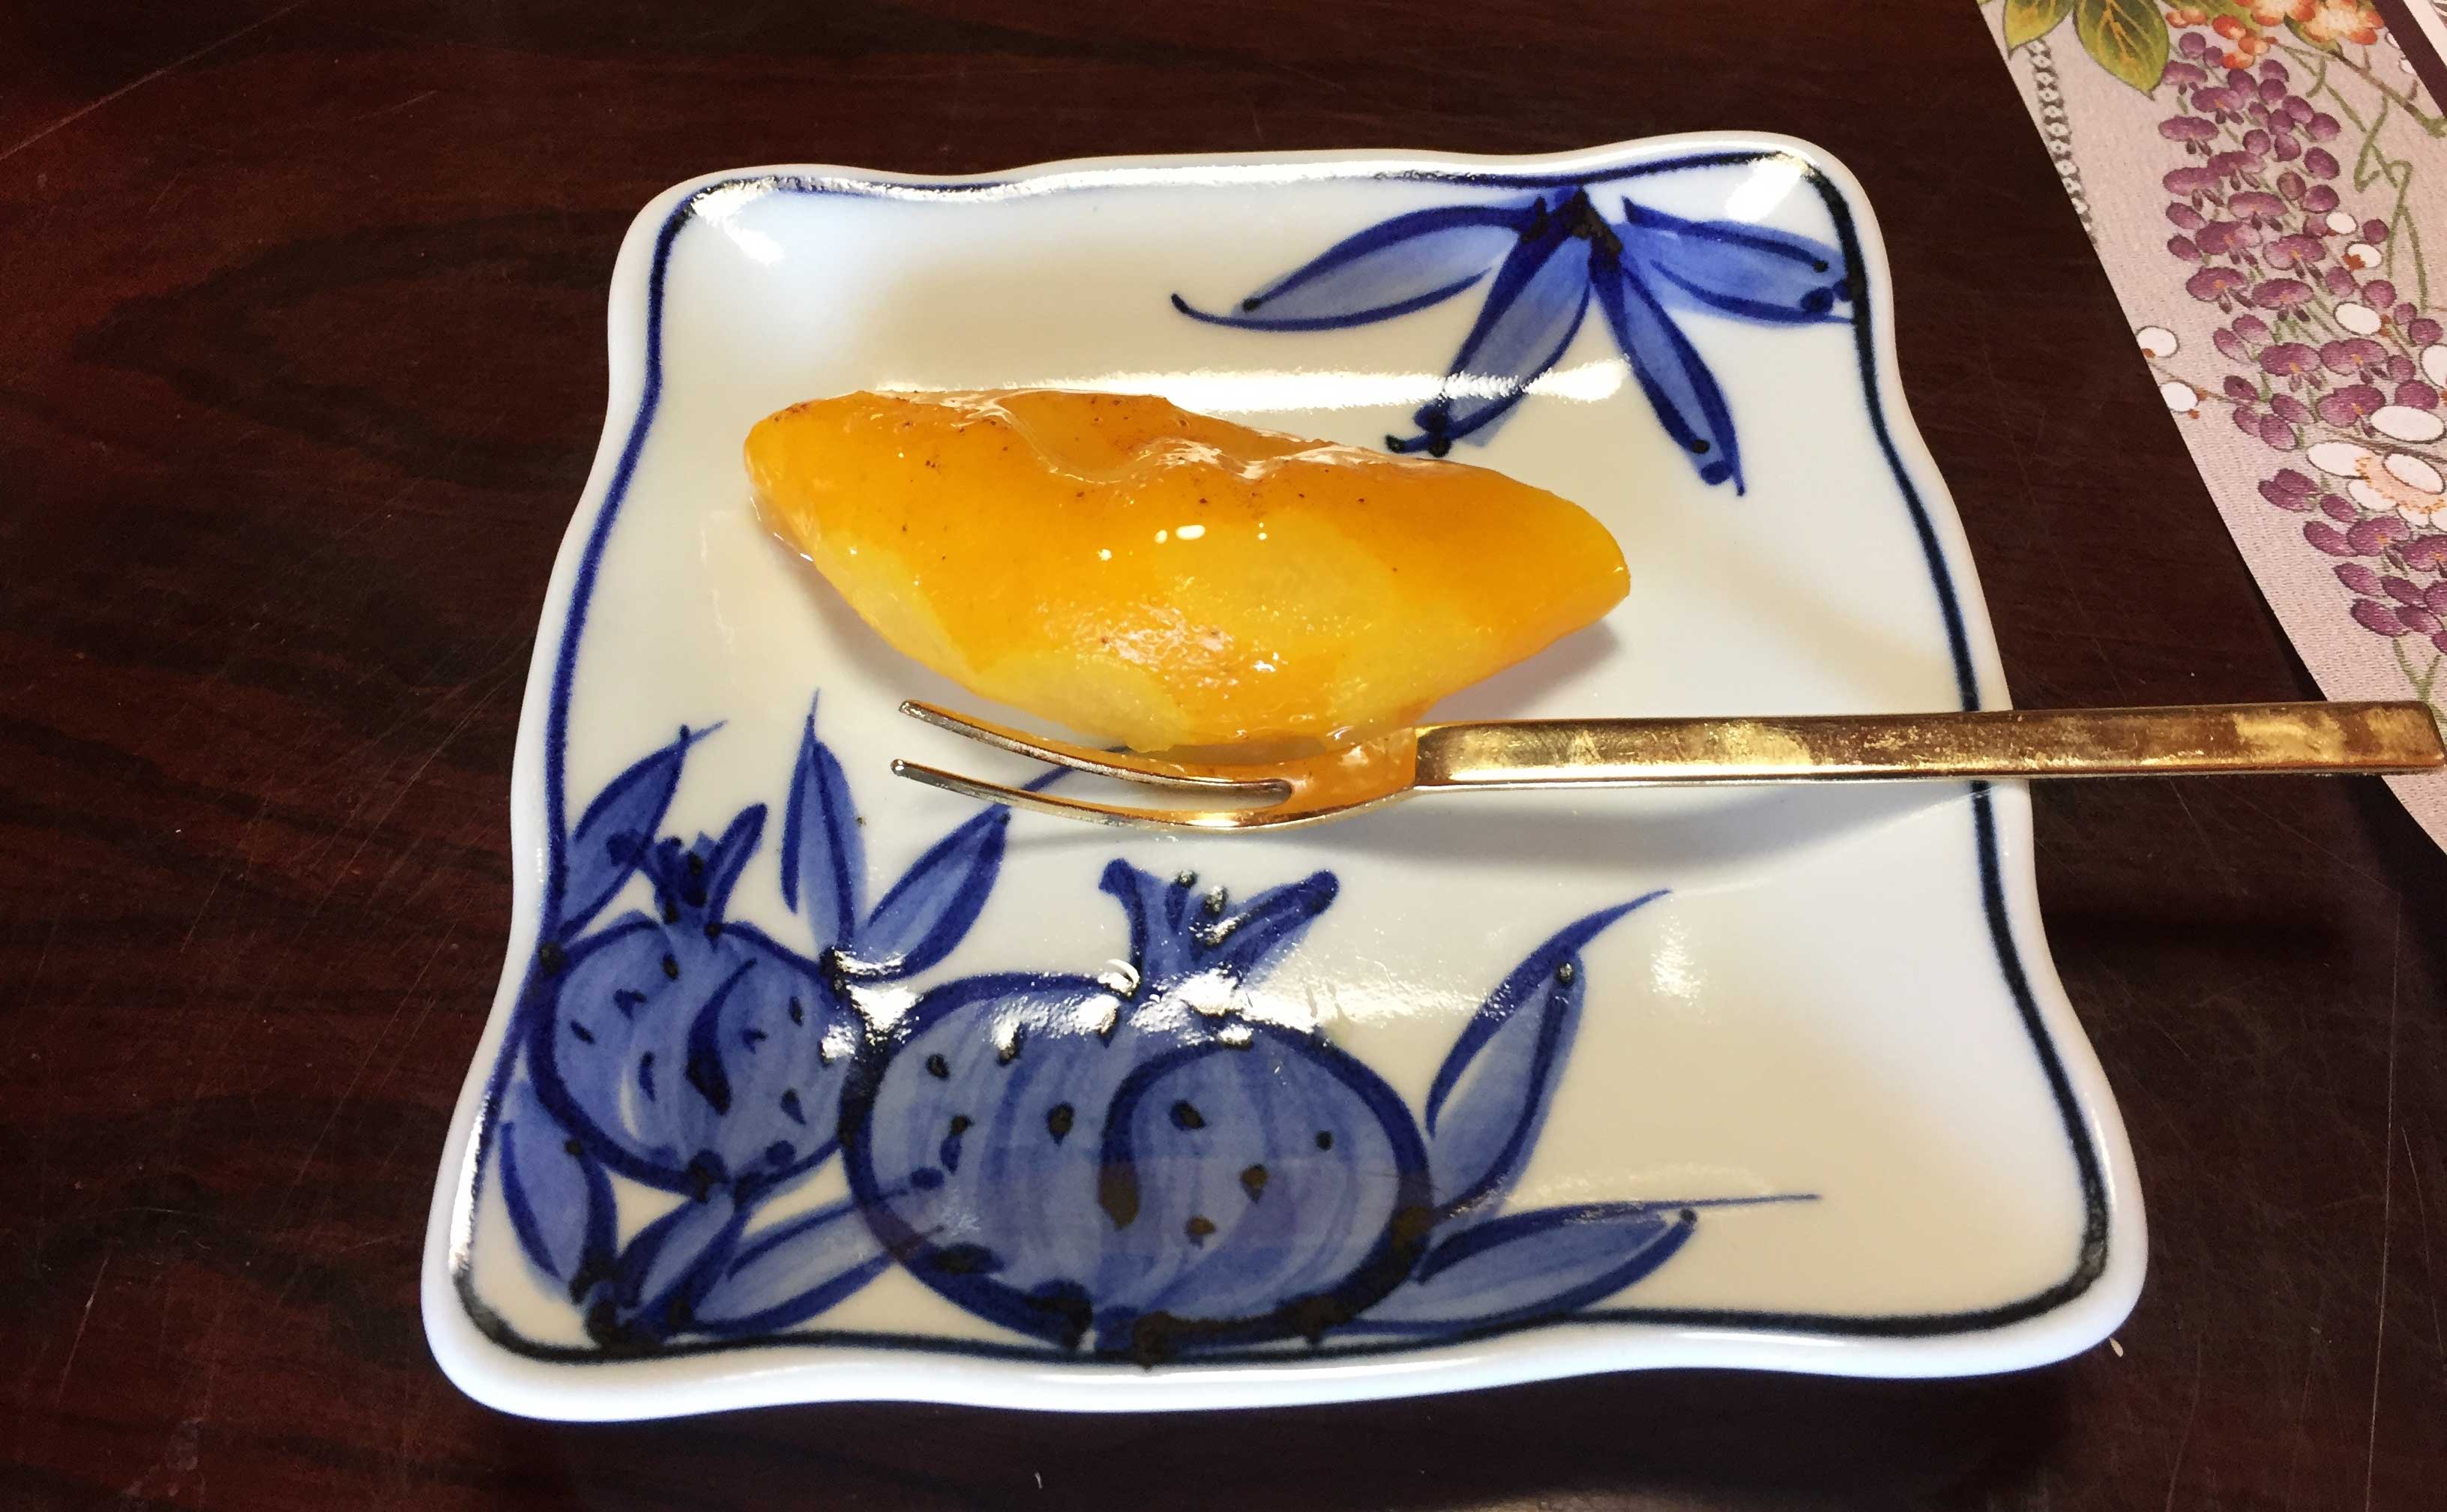 柚子の甘露煮